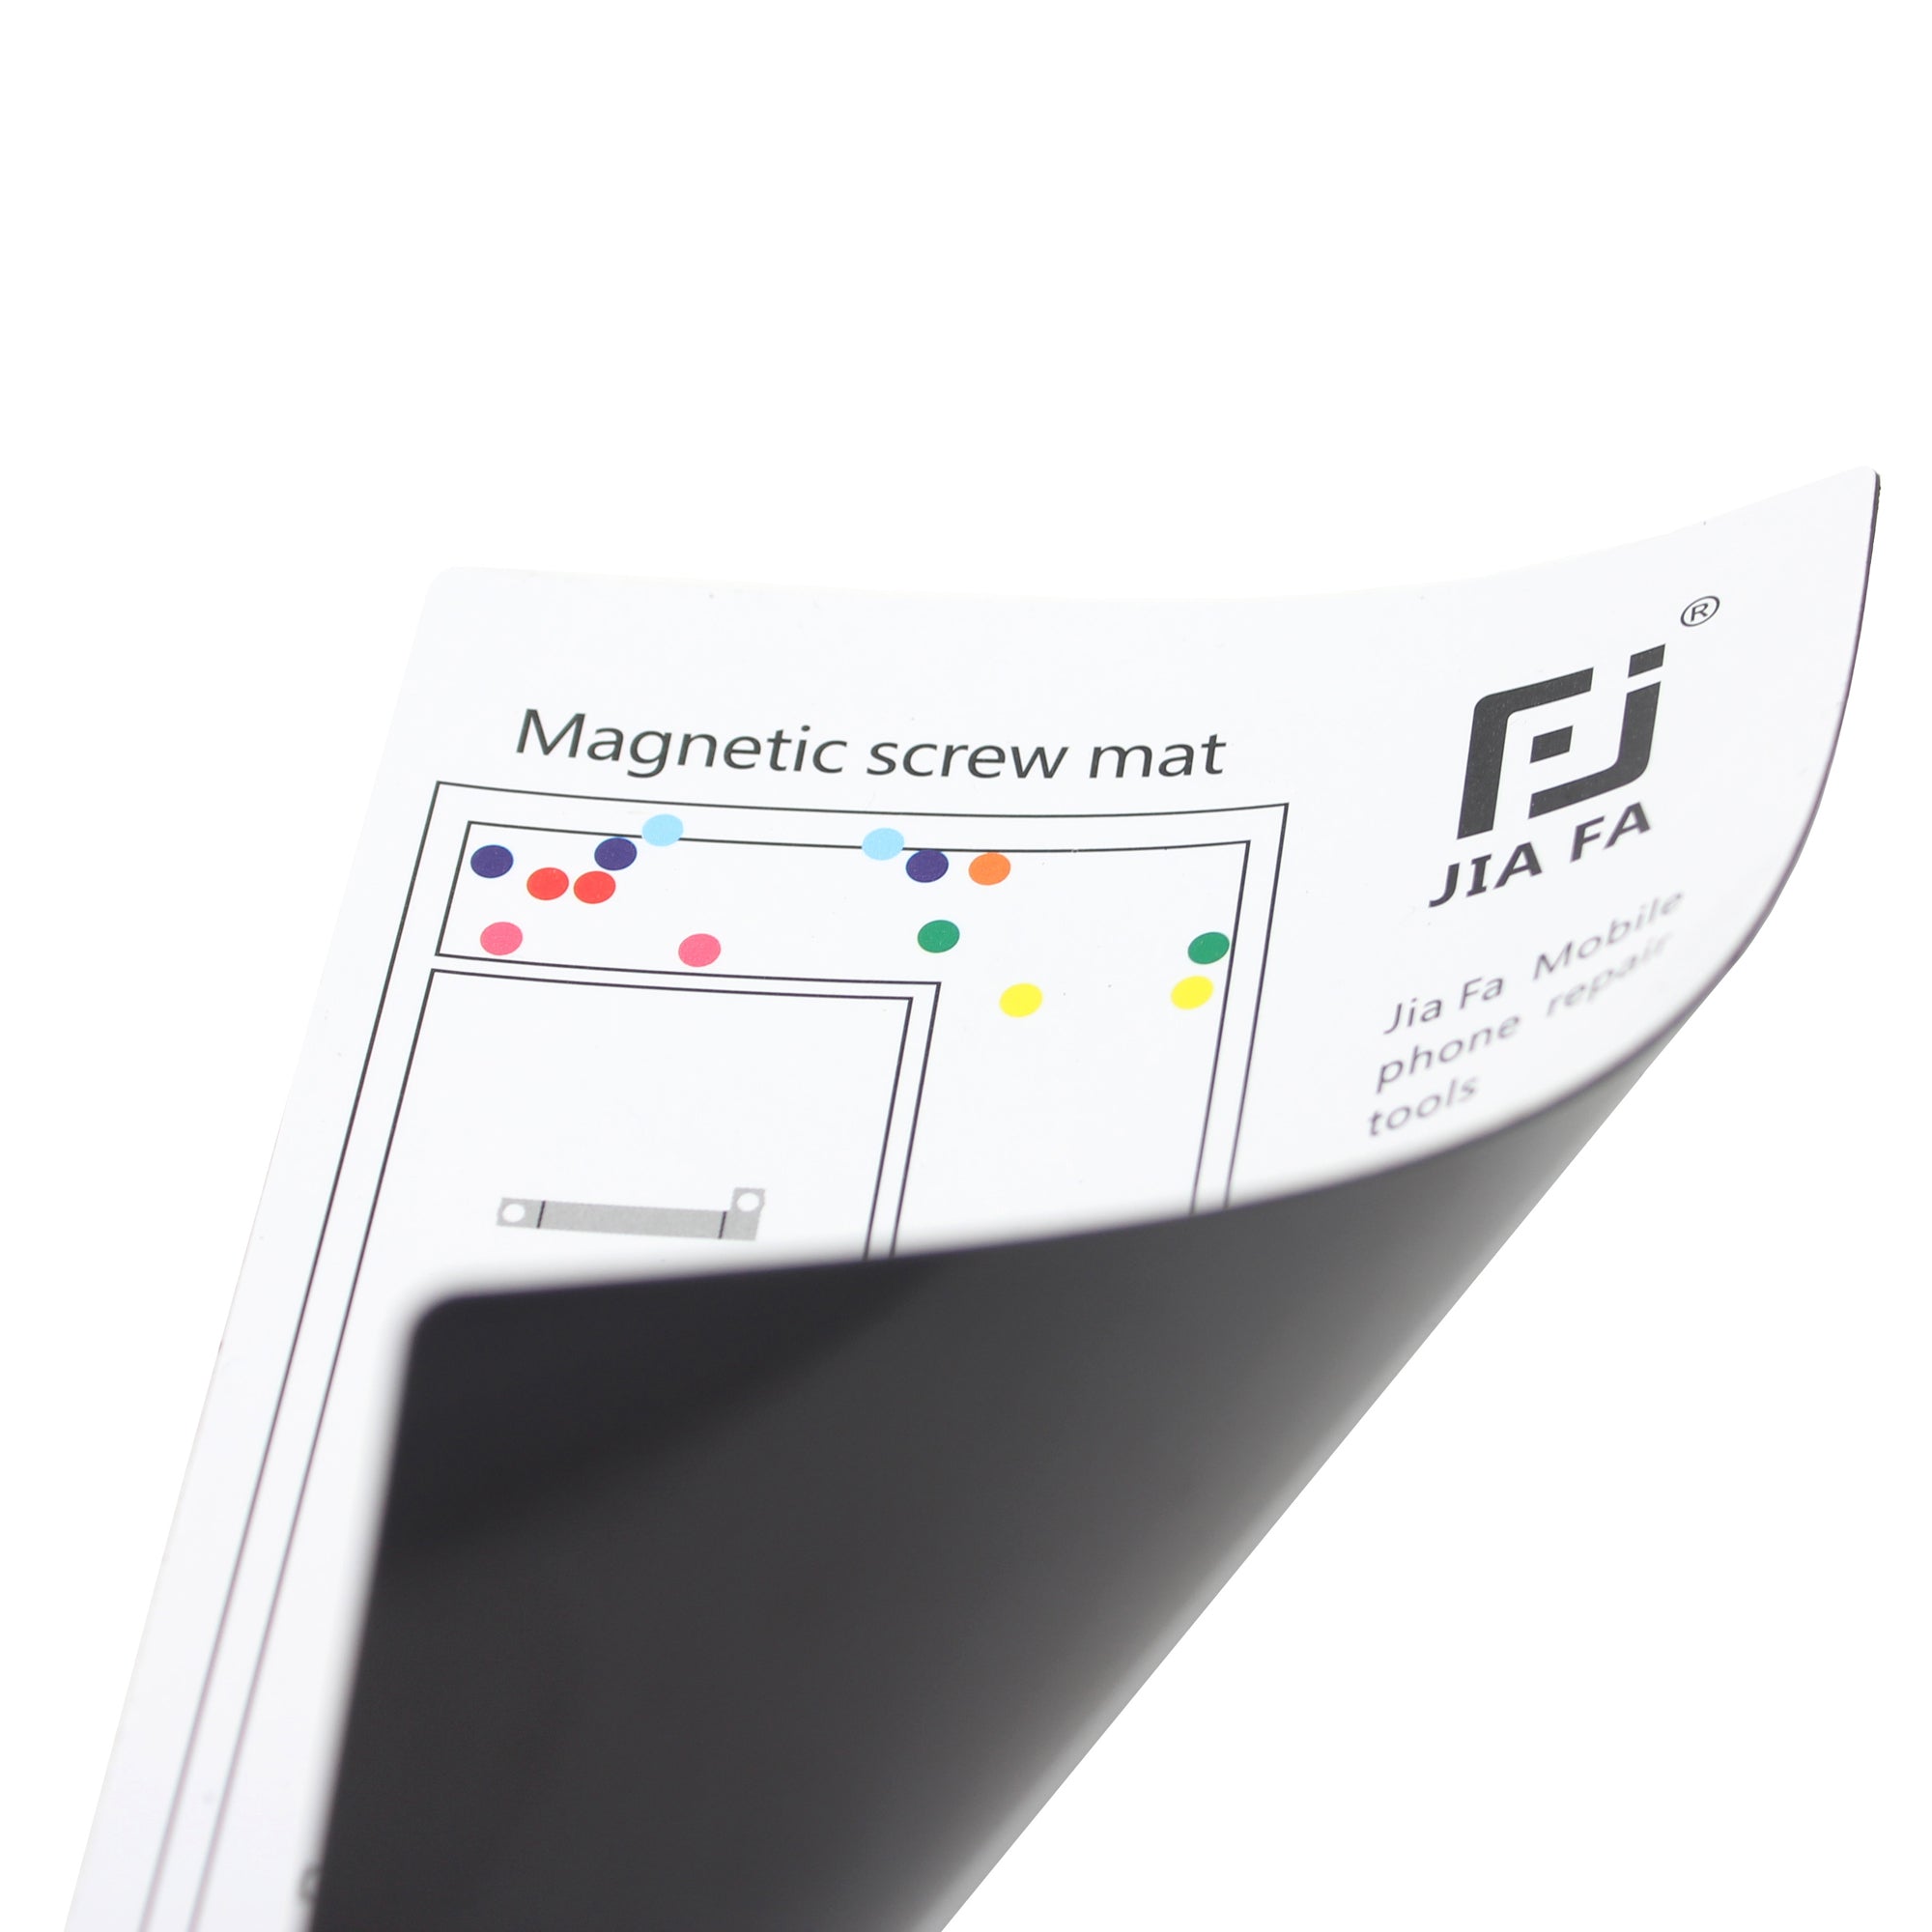 JF-870 Magnetic Screw Mat Mobile Phone Repair Tool for iPhone 6s Plus 5.5-inch